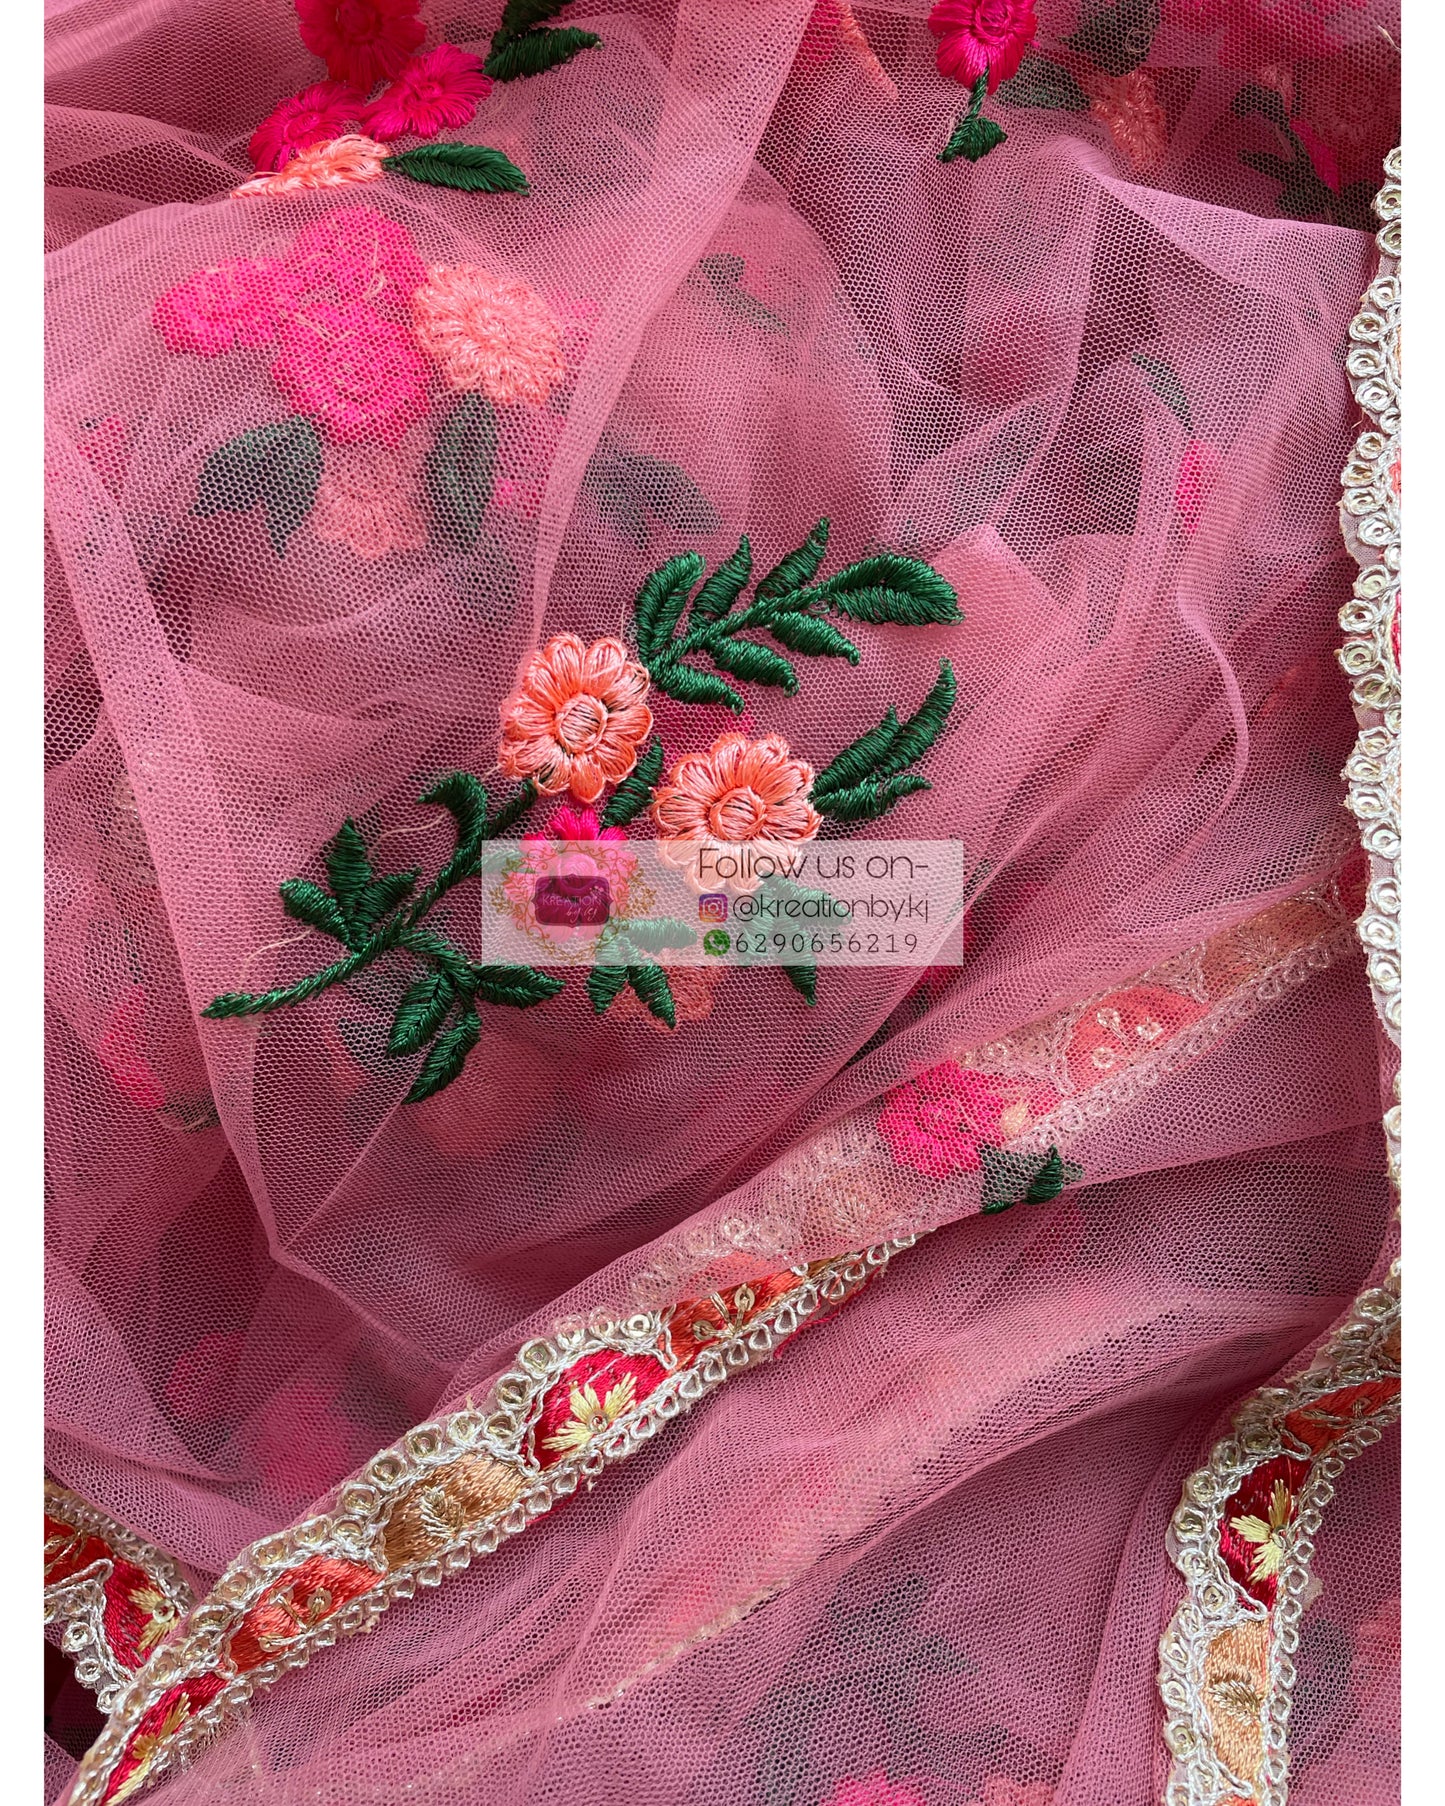 Peach Bouquet of Flowers Net Saree - kreationbykj